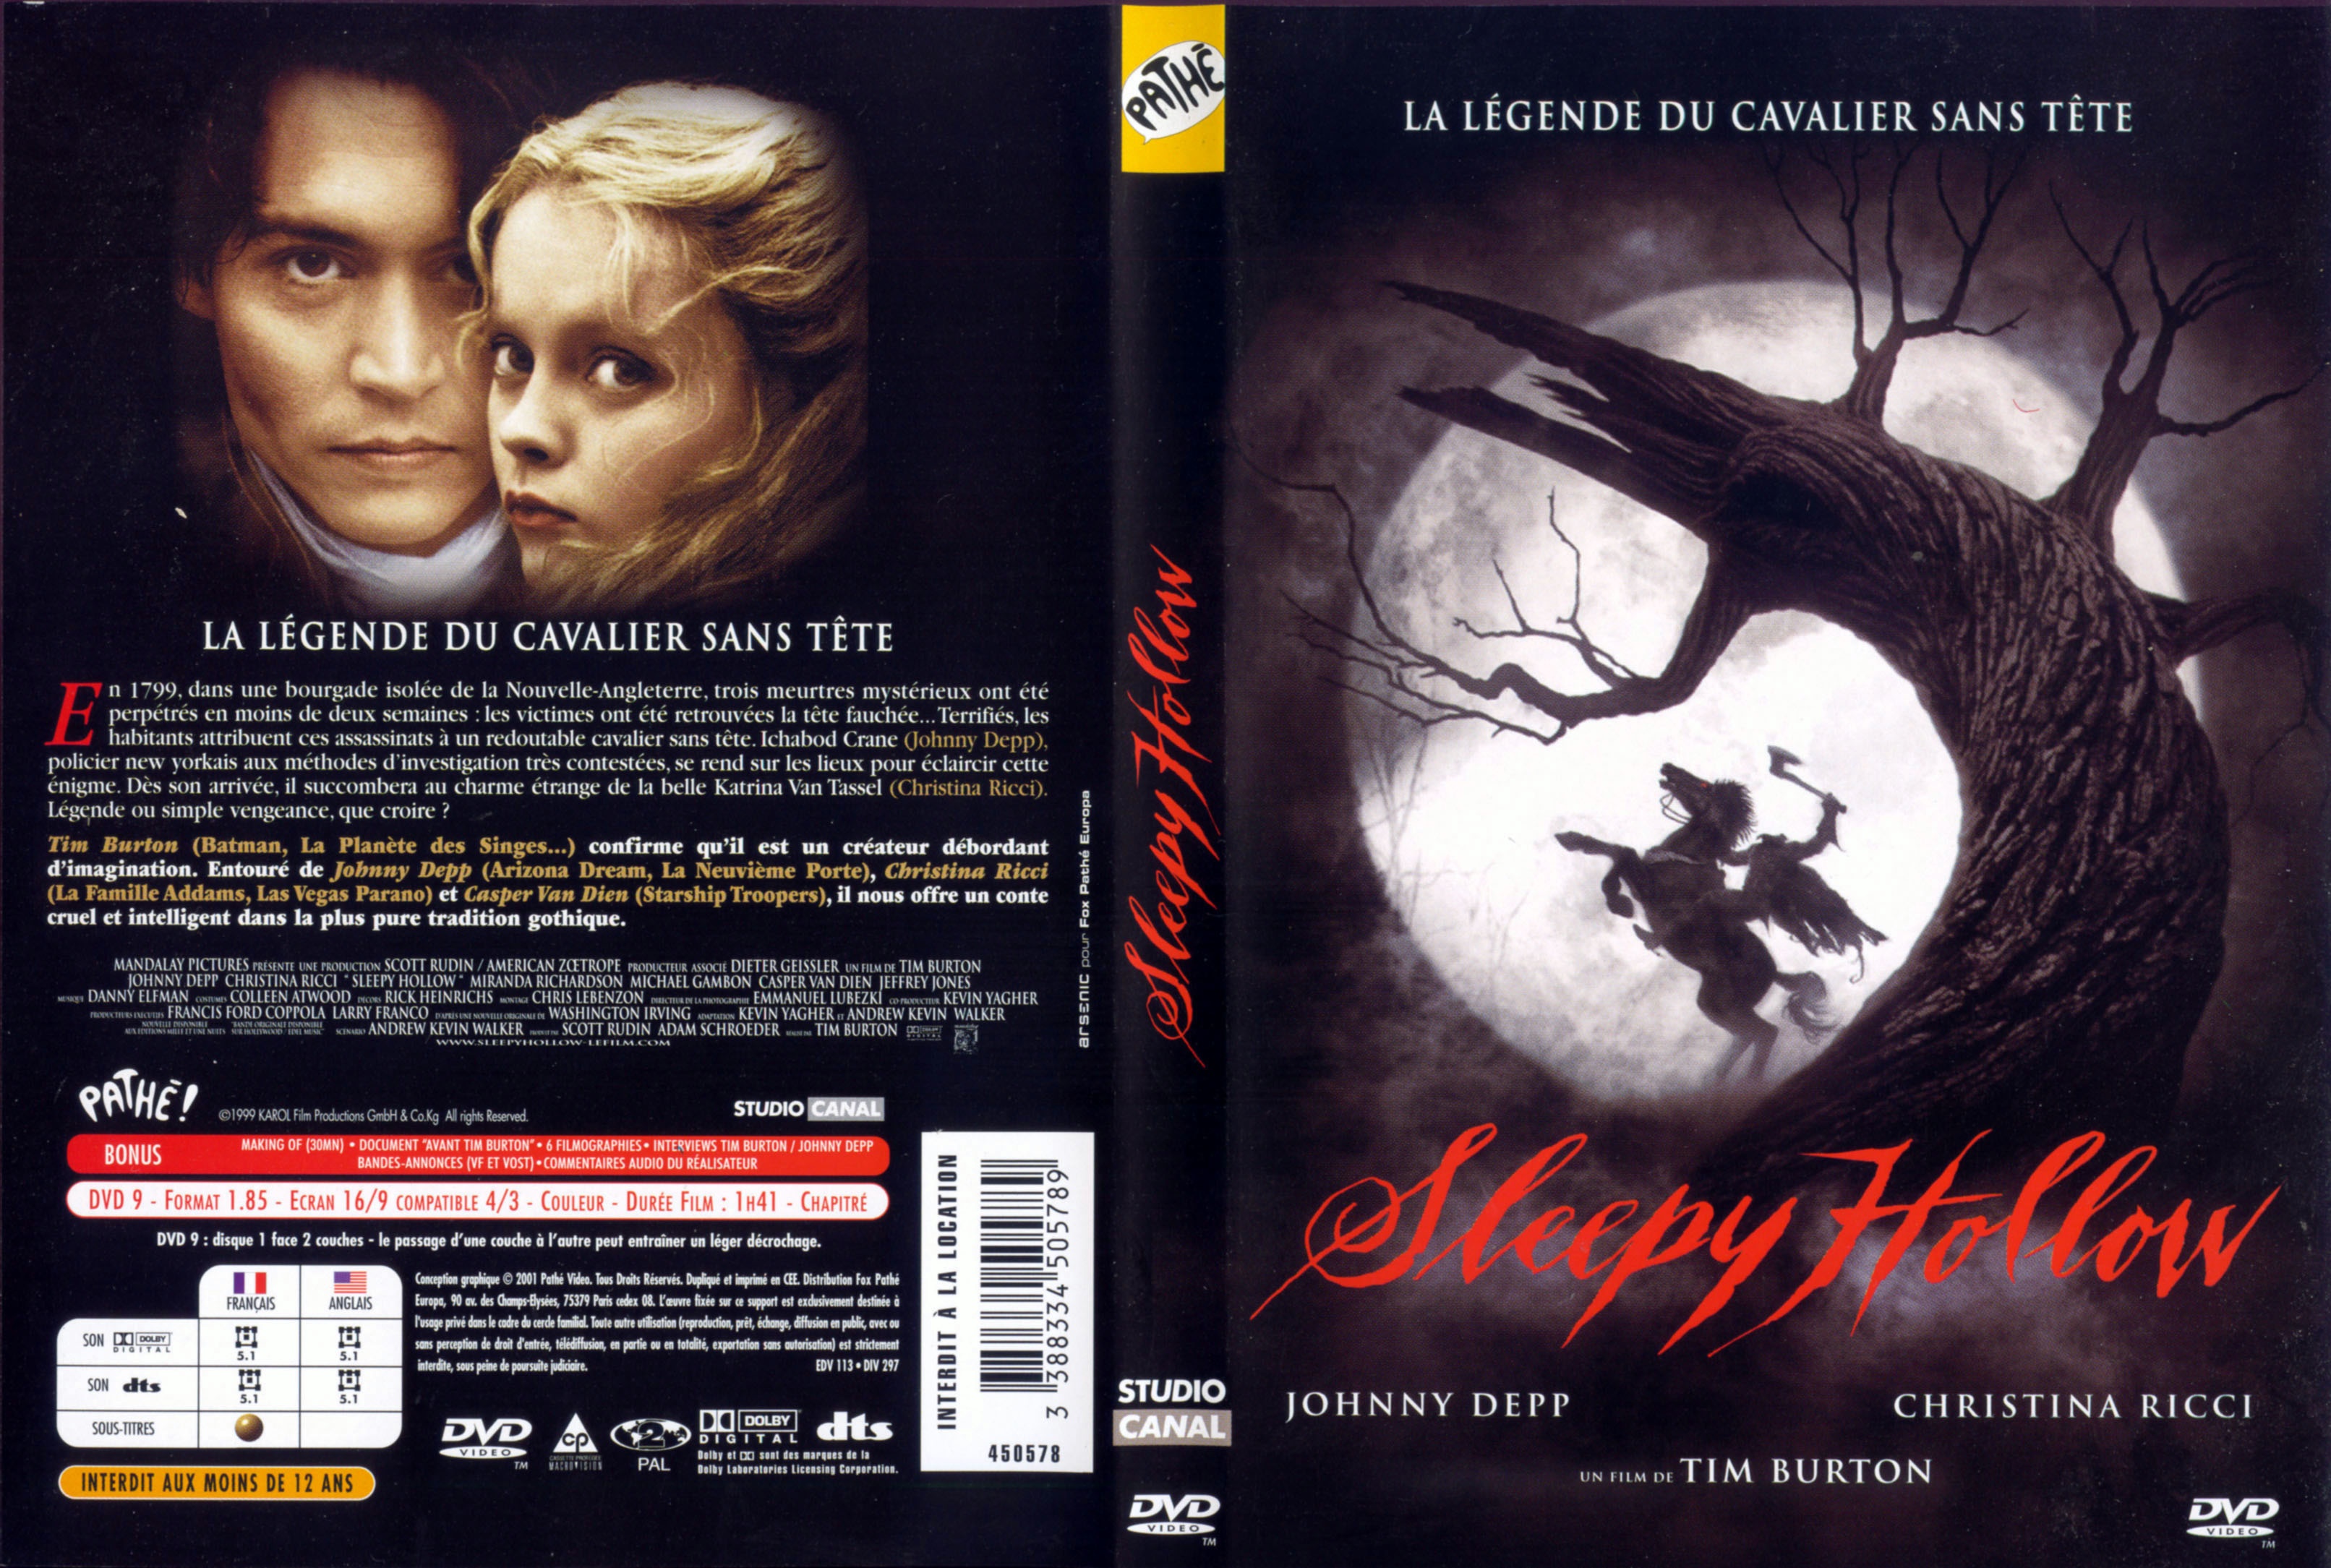 Jaquette DVD Sleepy hollow